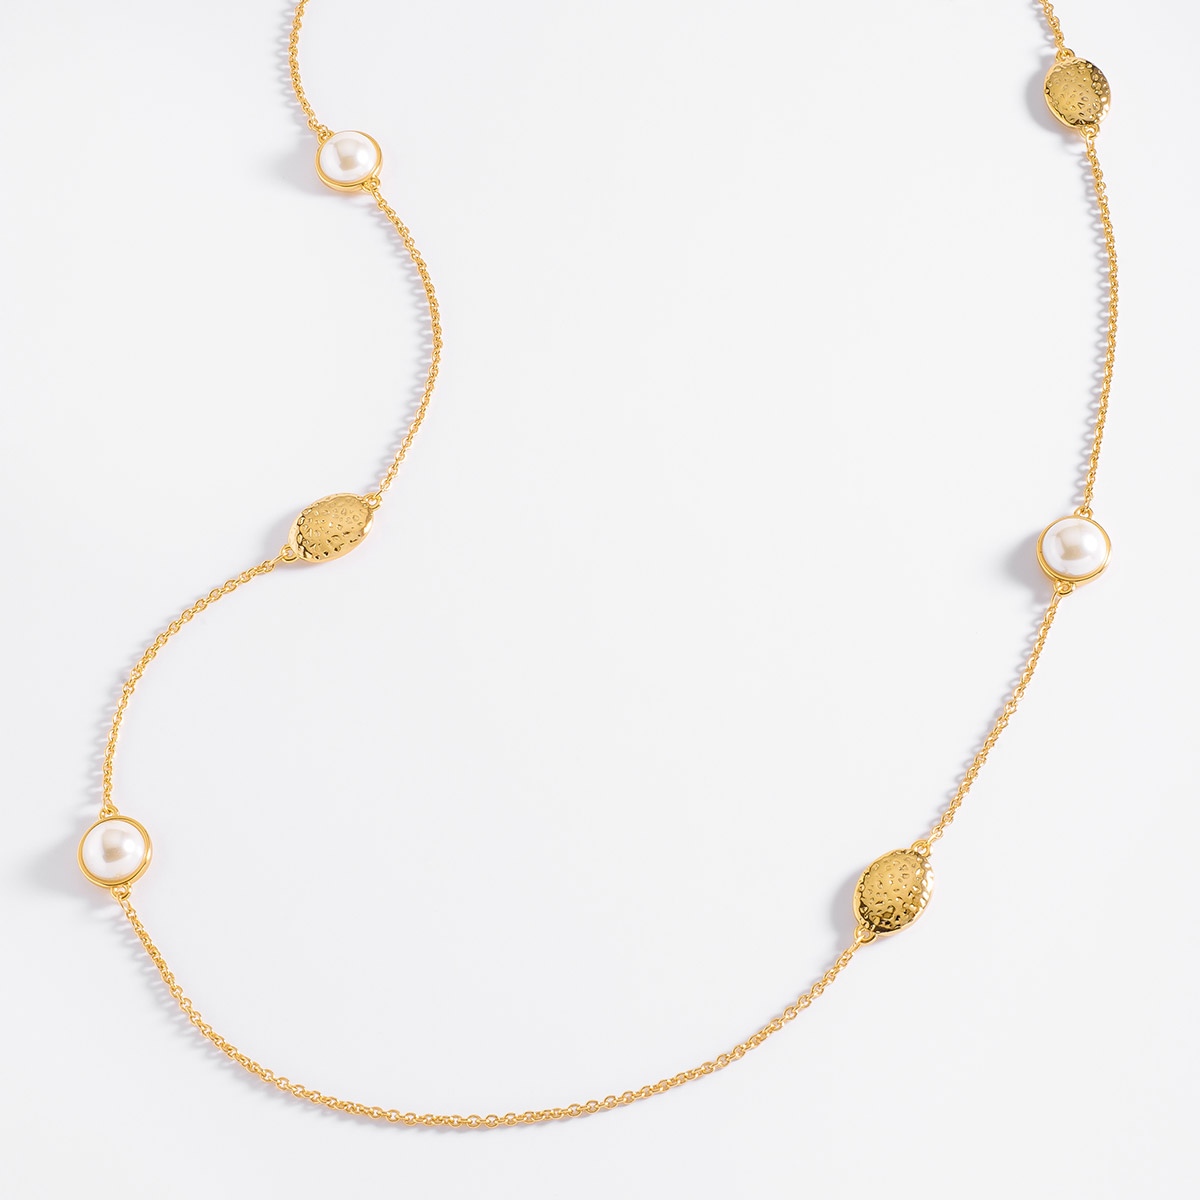 Moderno collar con perlas en tono crema y texturas en baño de oro.
-Collar
-100 cm
-Oro 18k
-Perlas en tono crema